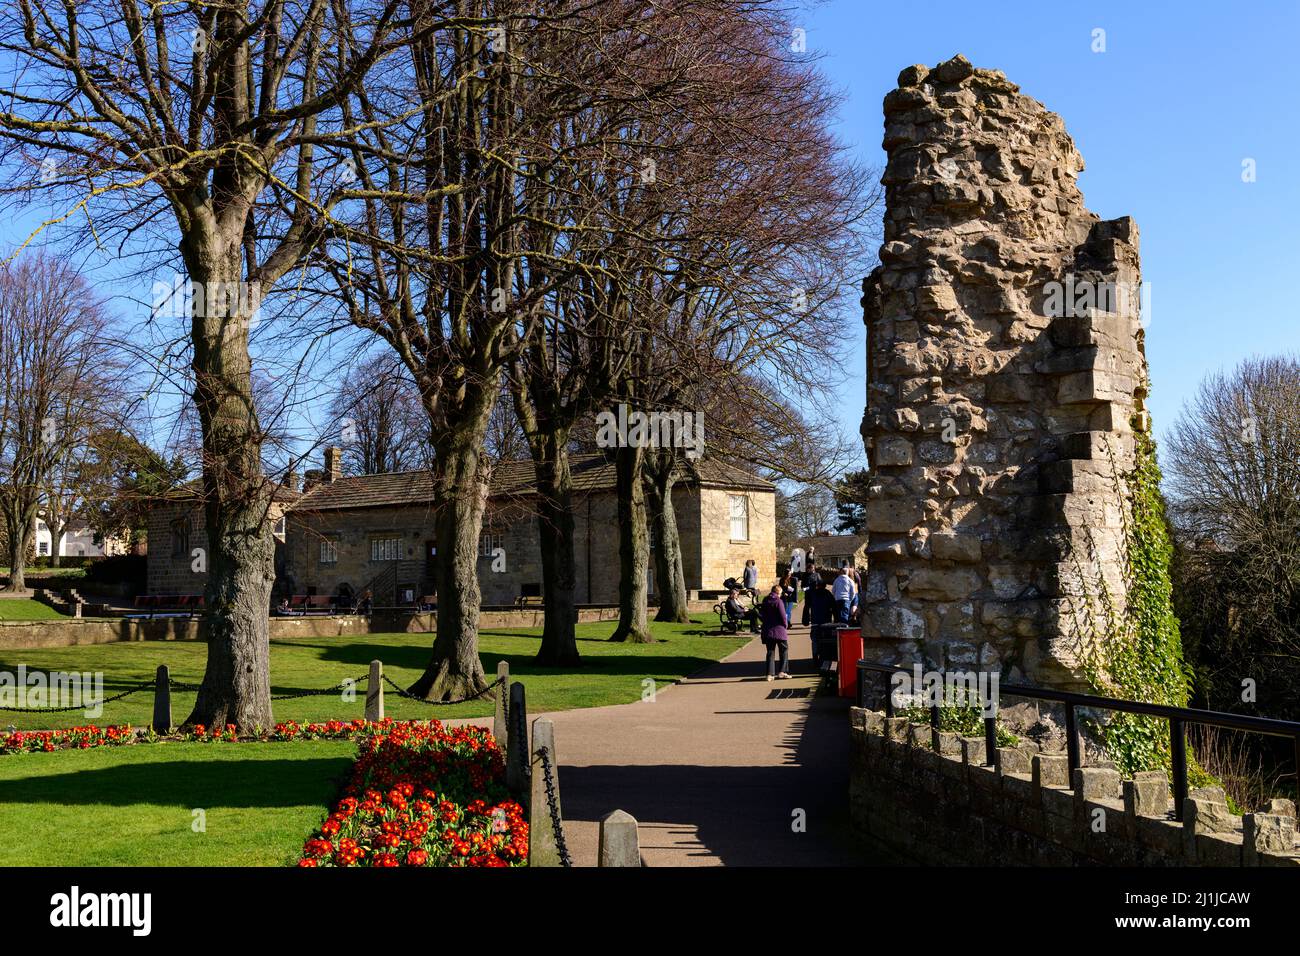 Les gens se détendent, marchant sur des chemins dans un parc ensoleillé (fleurs de la frontière lumineuse, ruines antiques, ciel bleu) - Château de Knaresborough, Yorkshire du Nord, Angleterre, Royaume-Uni. Banque D'Images